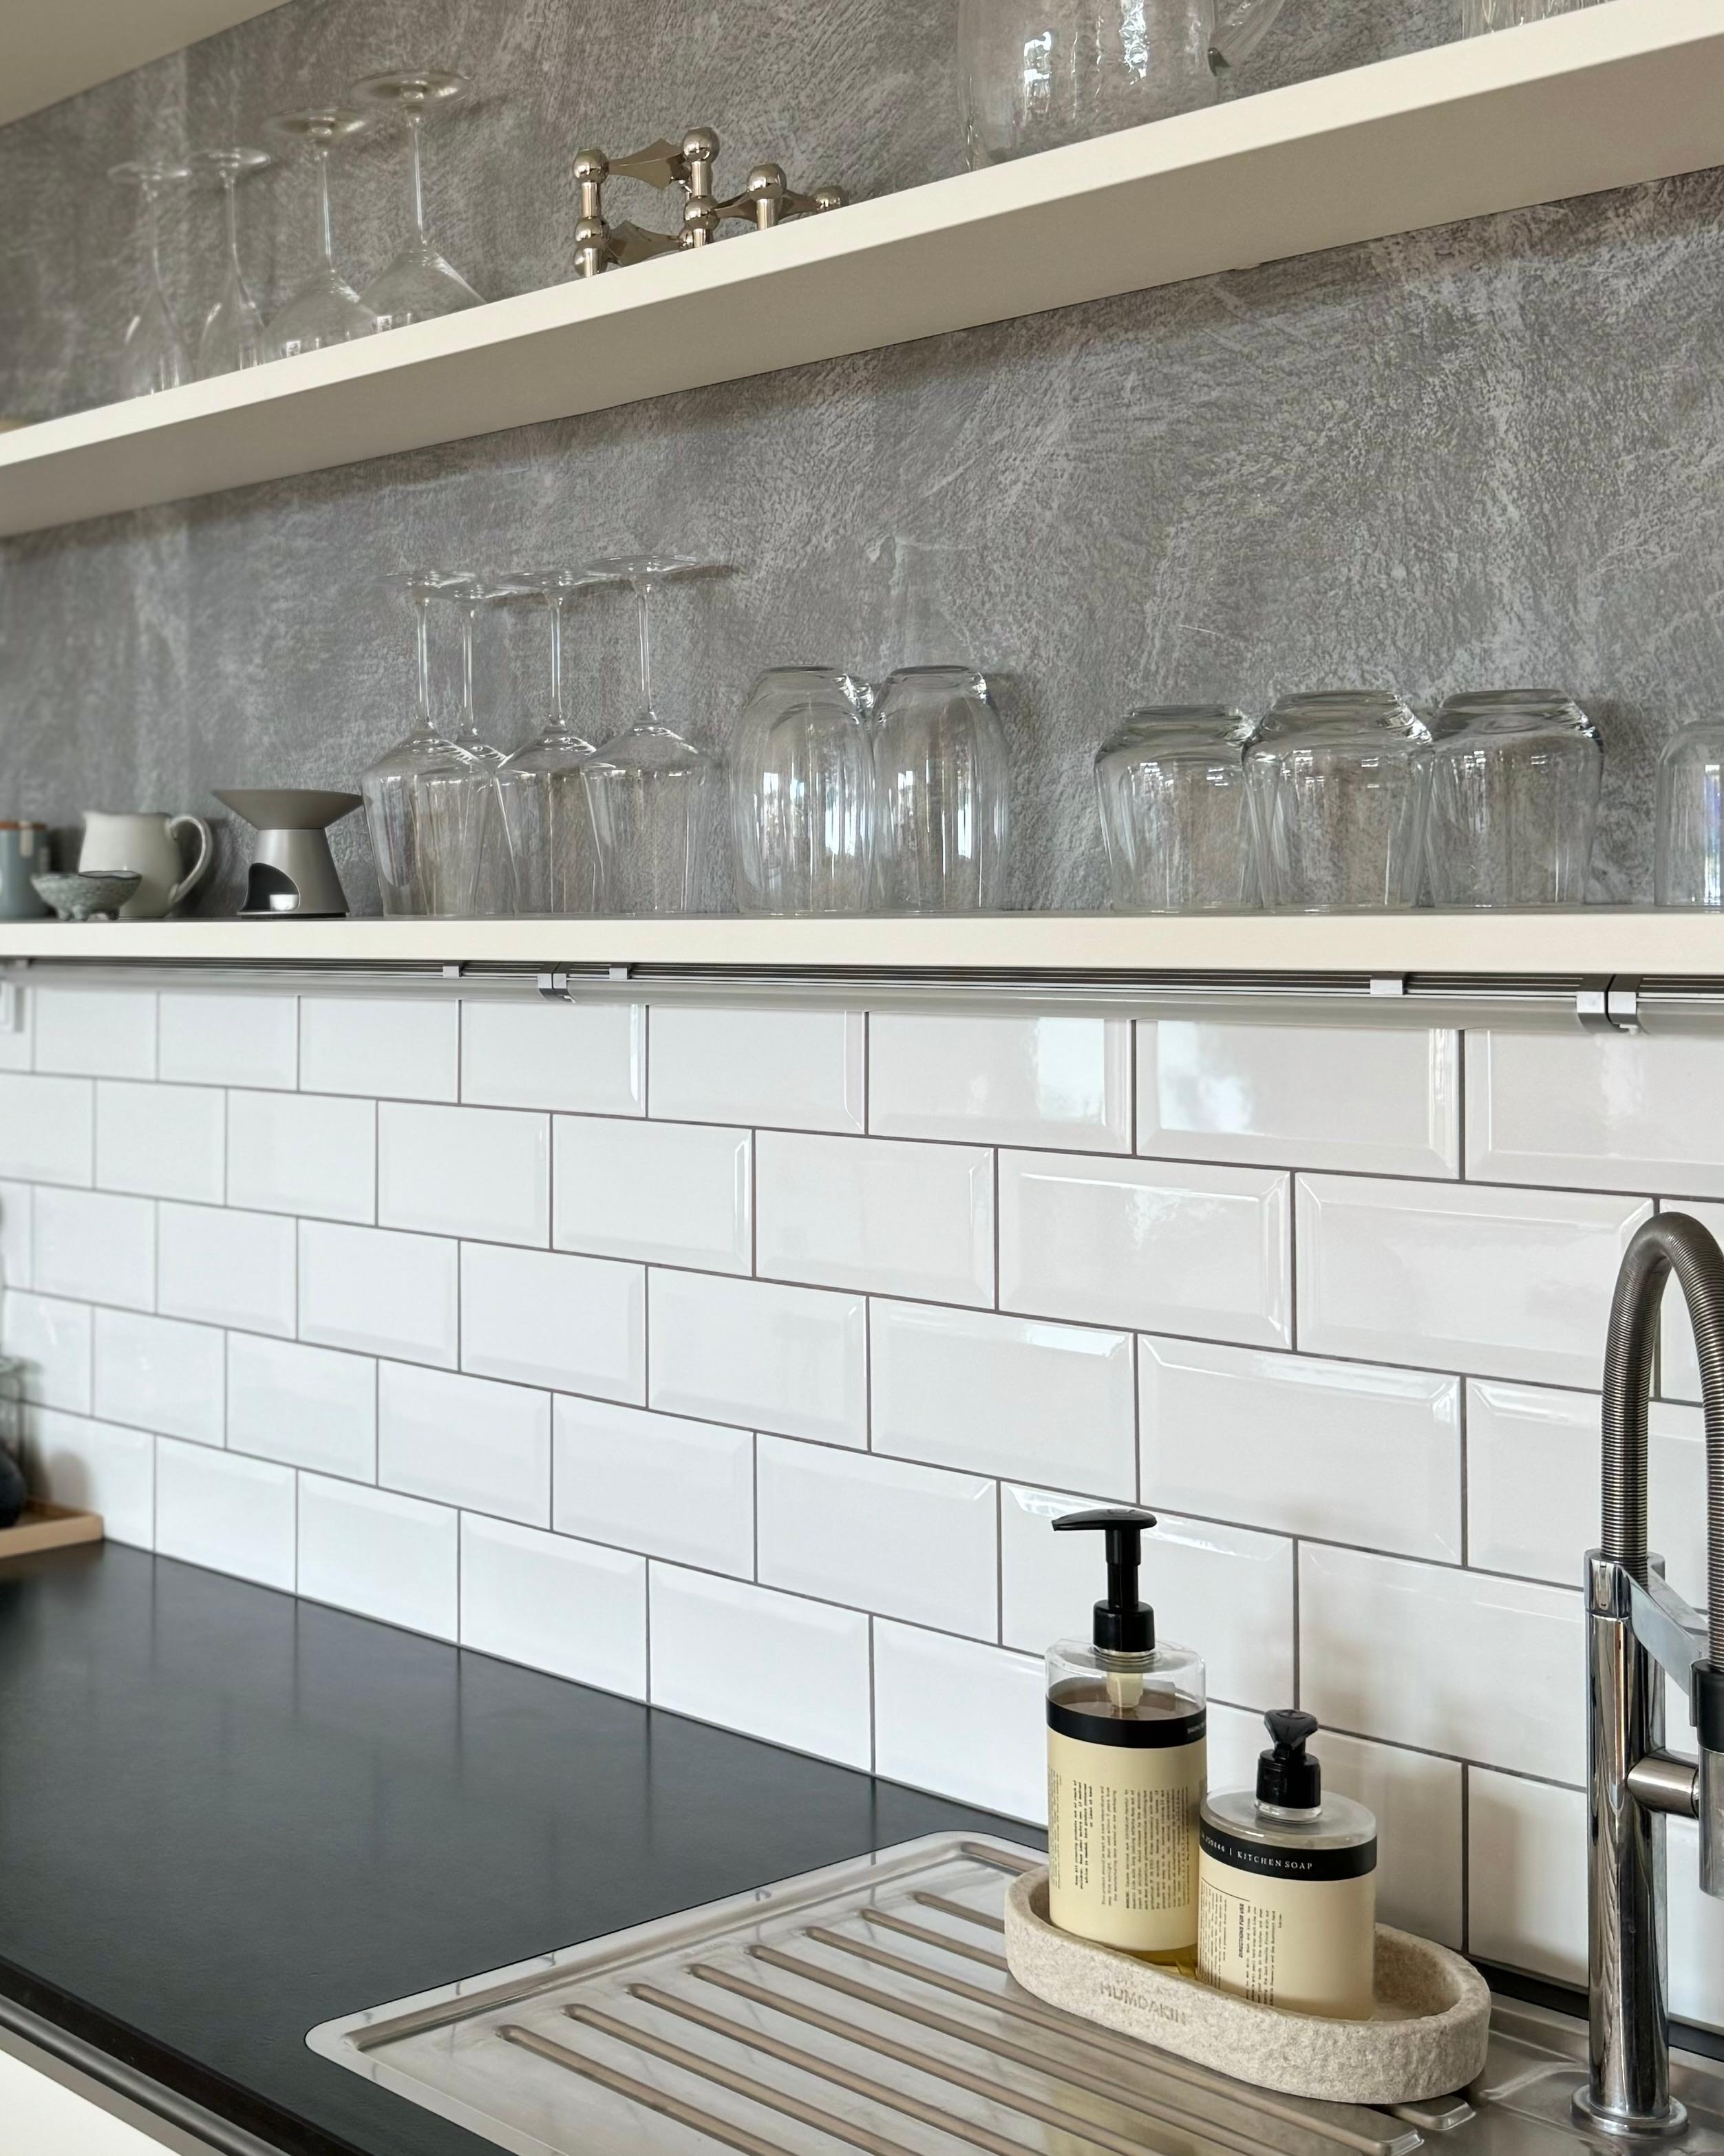 Kitchendetails 🤍🩶🖤

#küche #details #industrial #metrofliesen #granit #beton #sichtbeton #chrom #seife #küchenseife #spülmittel